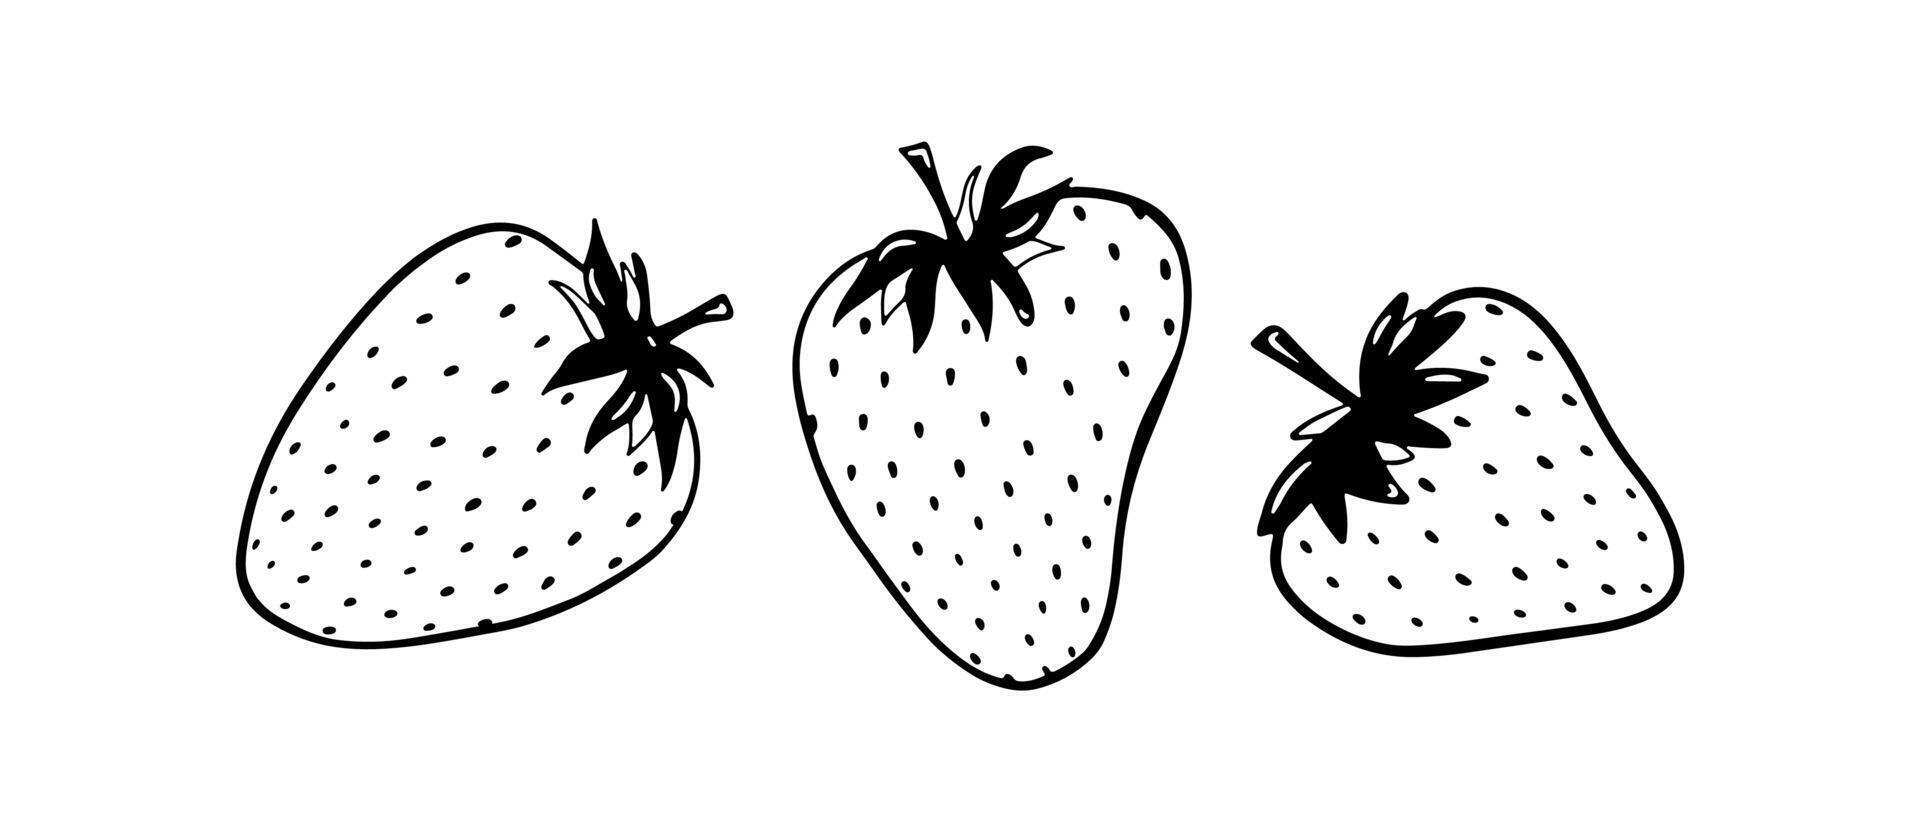 tekening aardbei illustratie. zwart hand- getrokken abstract fruit. zomer schetsen BES tekening. drie single elementen vector